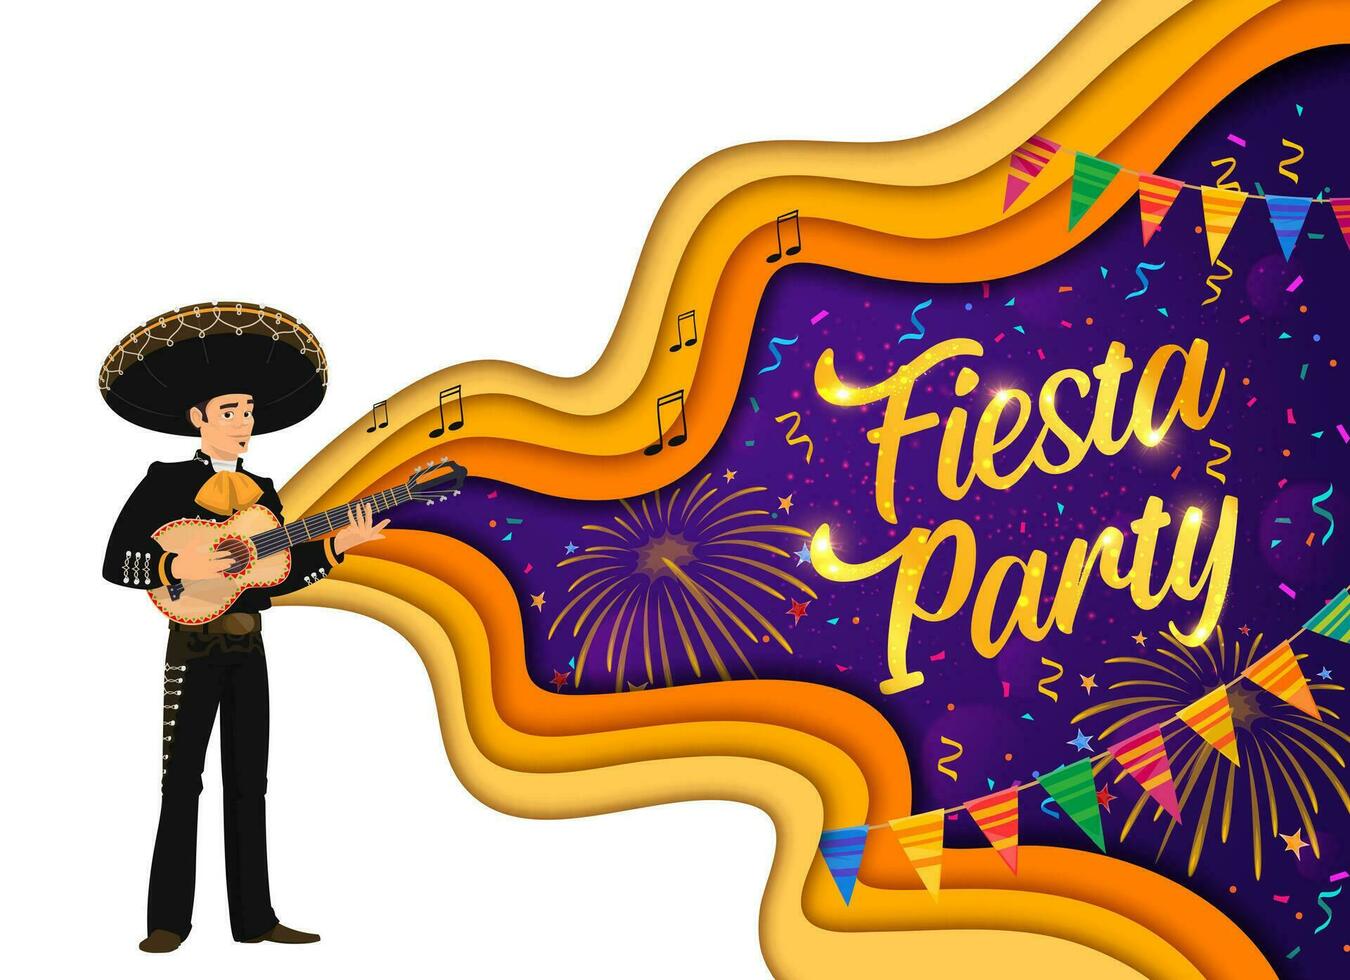 Fiesta Party Papier Schnitt Banner, Feuerwerk, Mariachi vektor